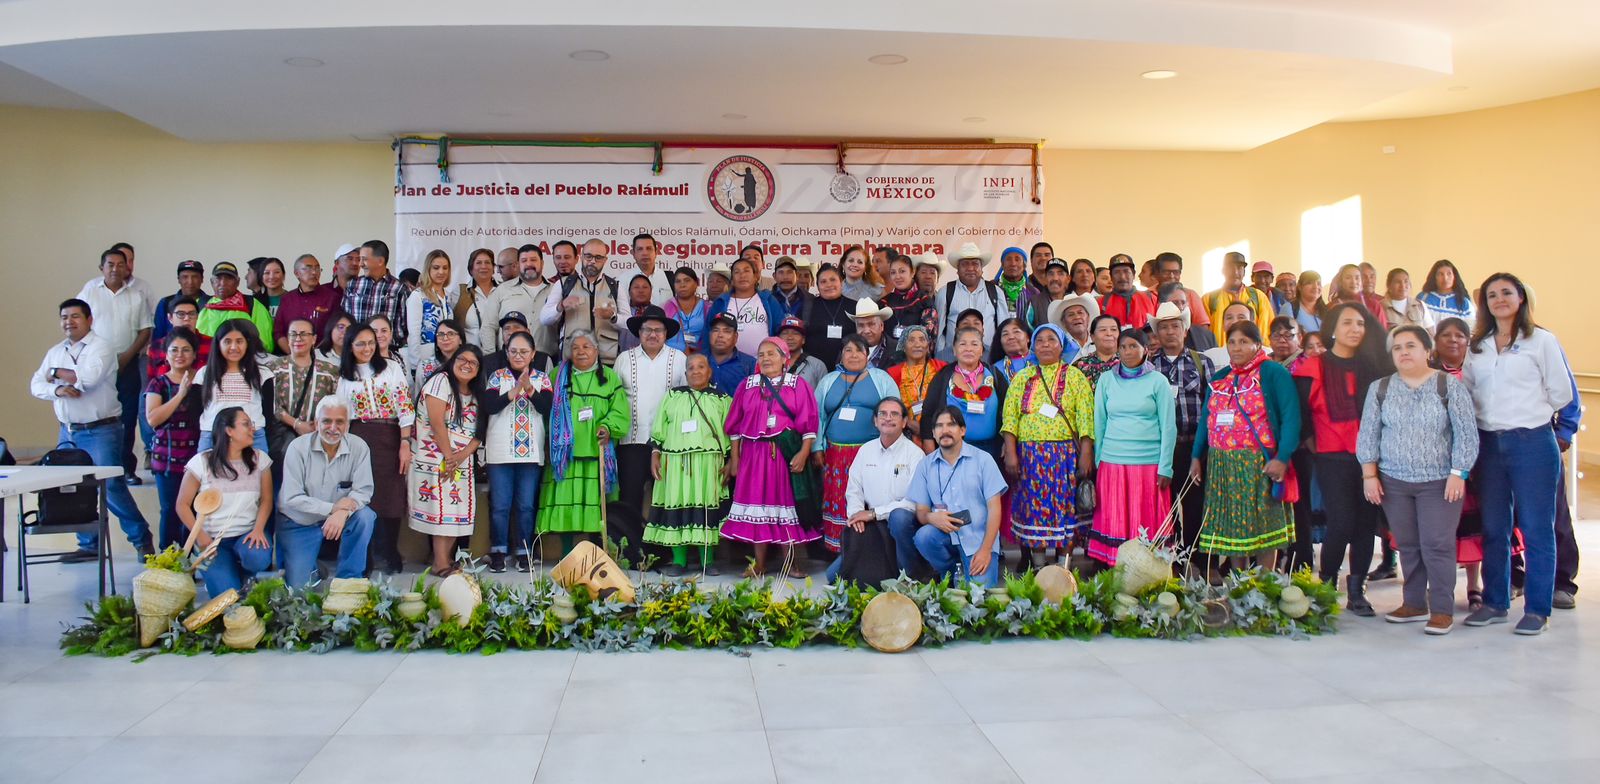 Son los pueblos ralámuli, ódami, oichkama (pima) y warijó, que reúnen a 348 comunidades, representadas por 75 autoridades indígenas, quienes que hoy se unen en esta lucha. (CORTESÍA)